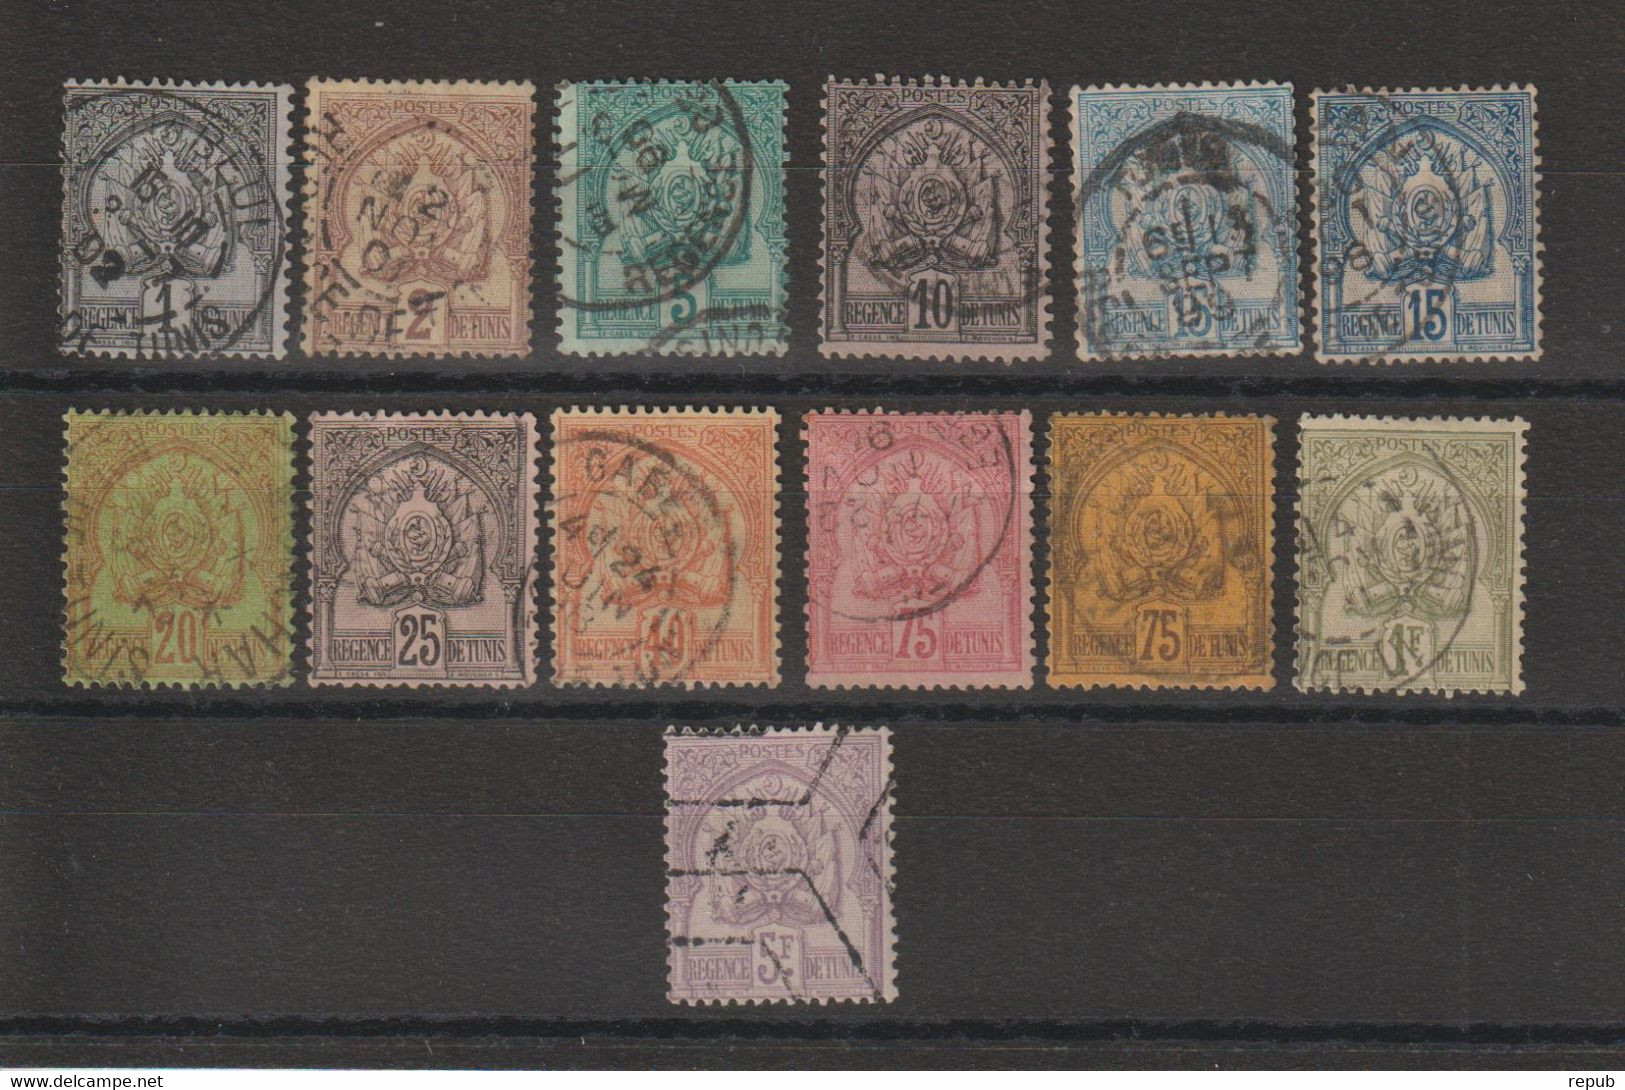 Tunisie 1888-93 Série 9-21, 13 Val Oblit Used - Oblitérés